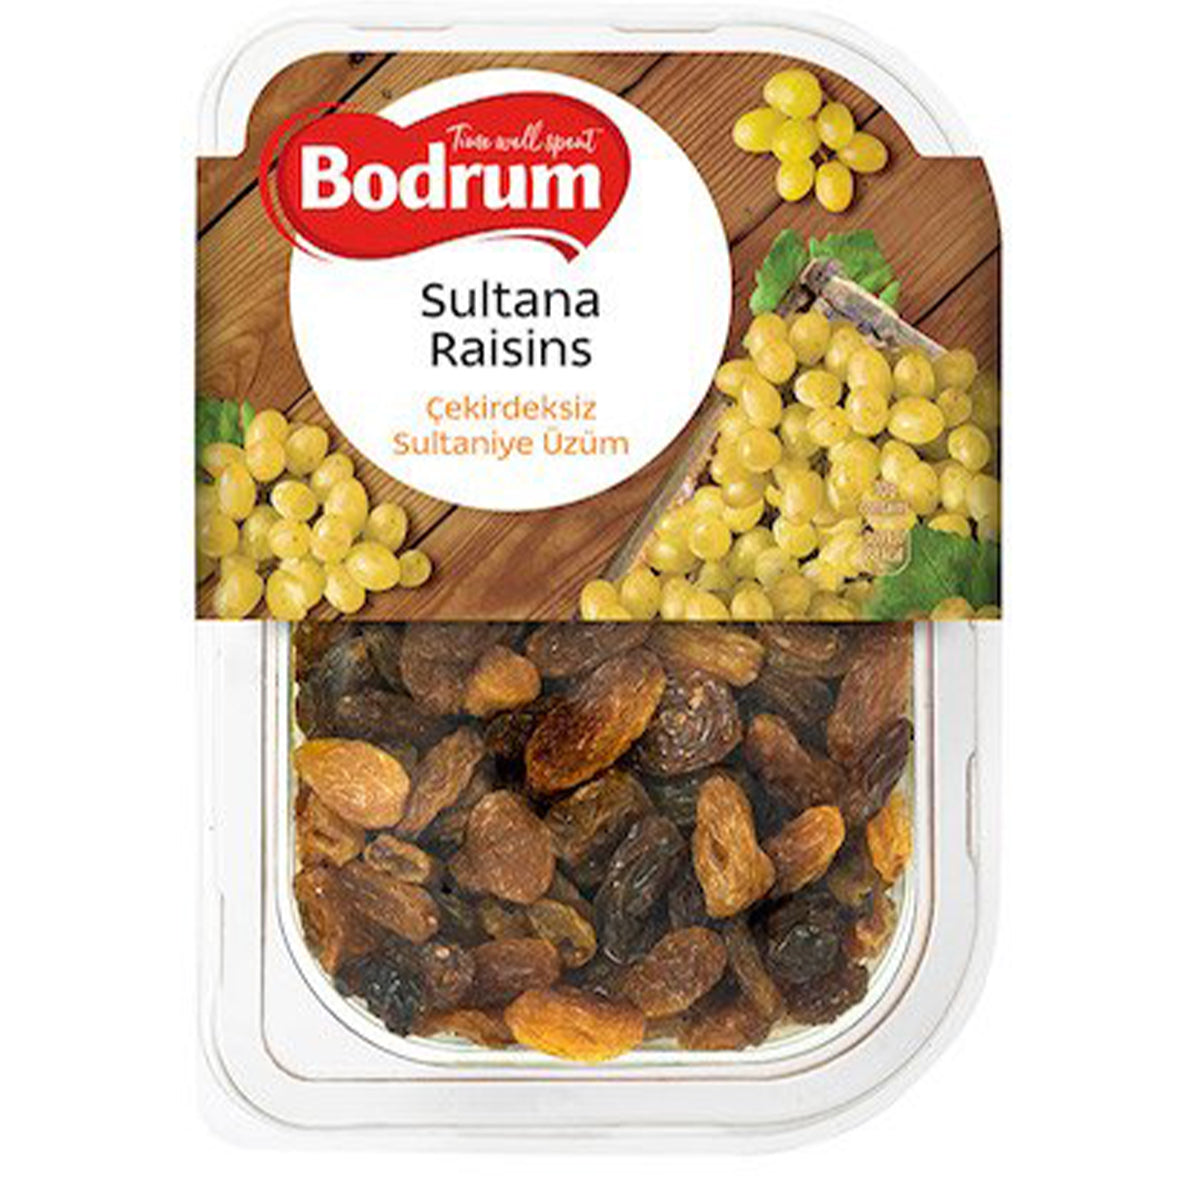 Bodrum - Sultana Raisins - 250g in a plastic container.